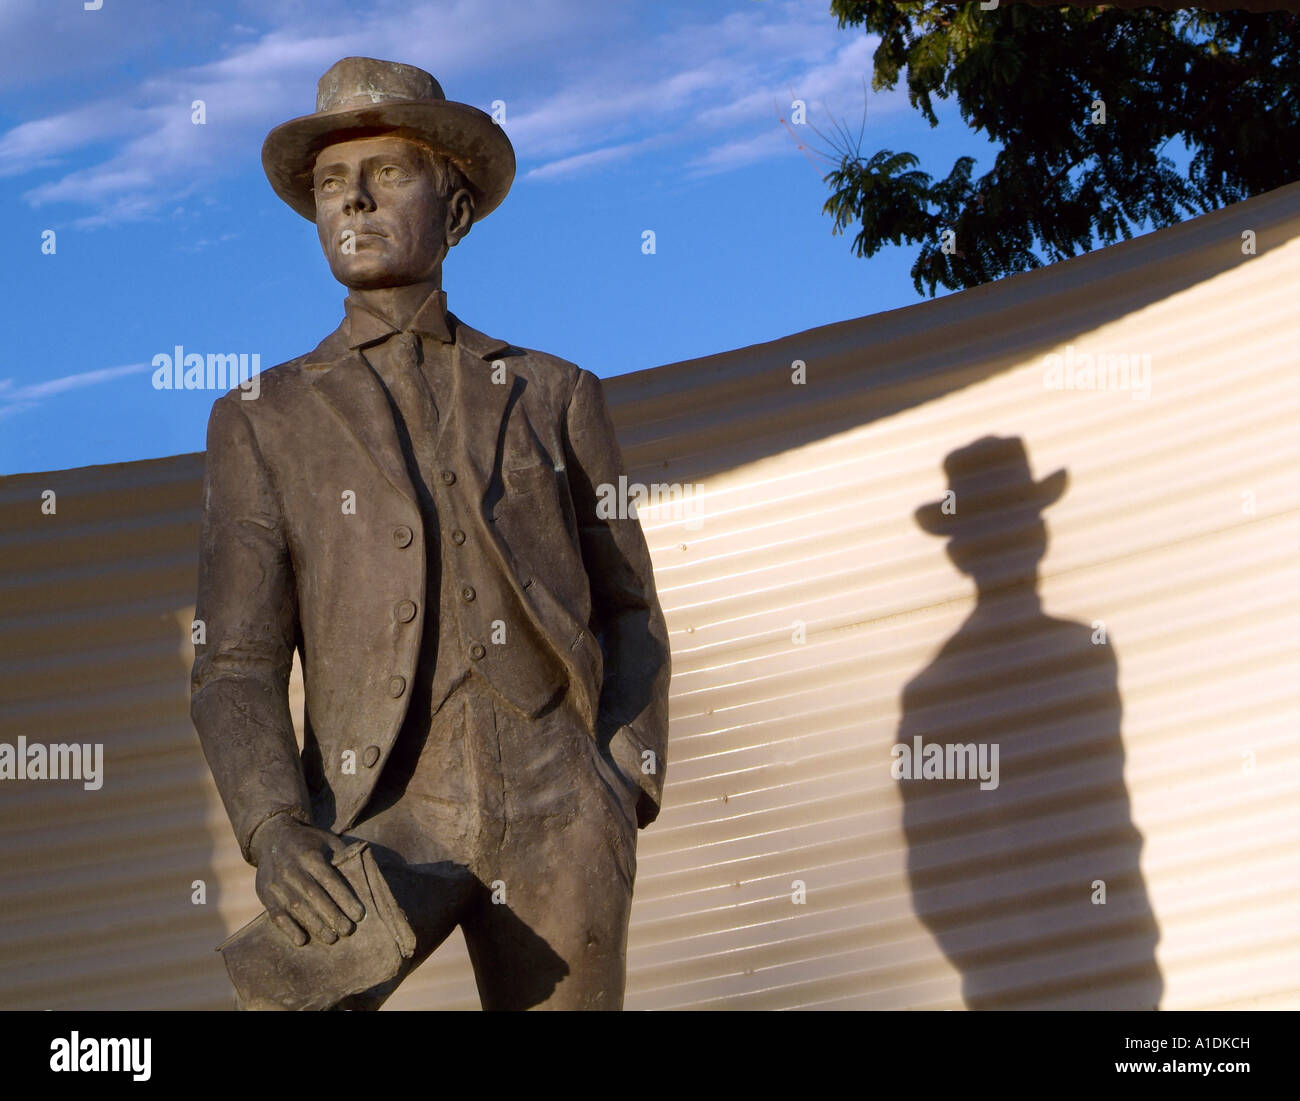 Statue des australischen Dichter Banjo Patterson in Winton, Queensland. Er schrieb Waltzing Matilda, Foto von Bruce Miller Stockfoto